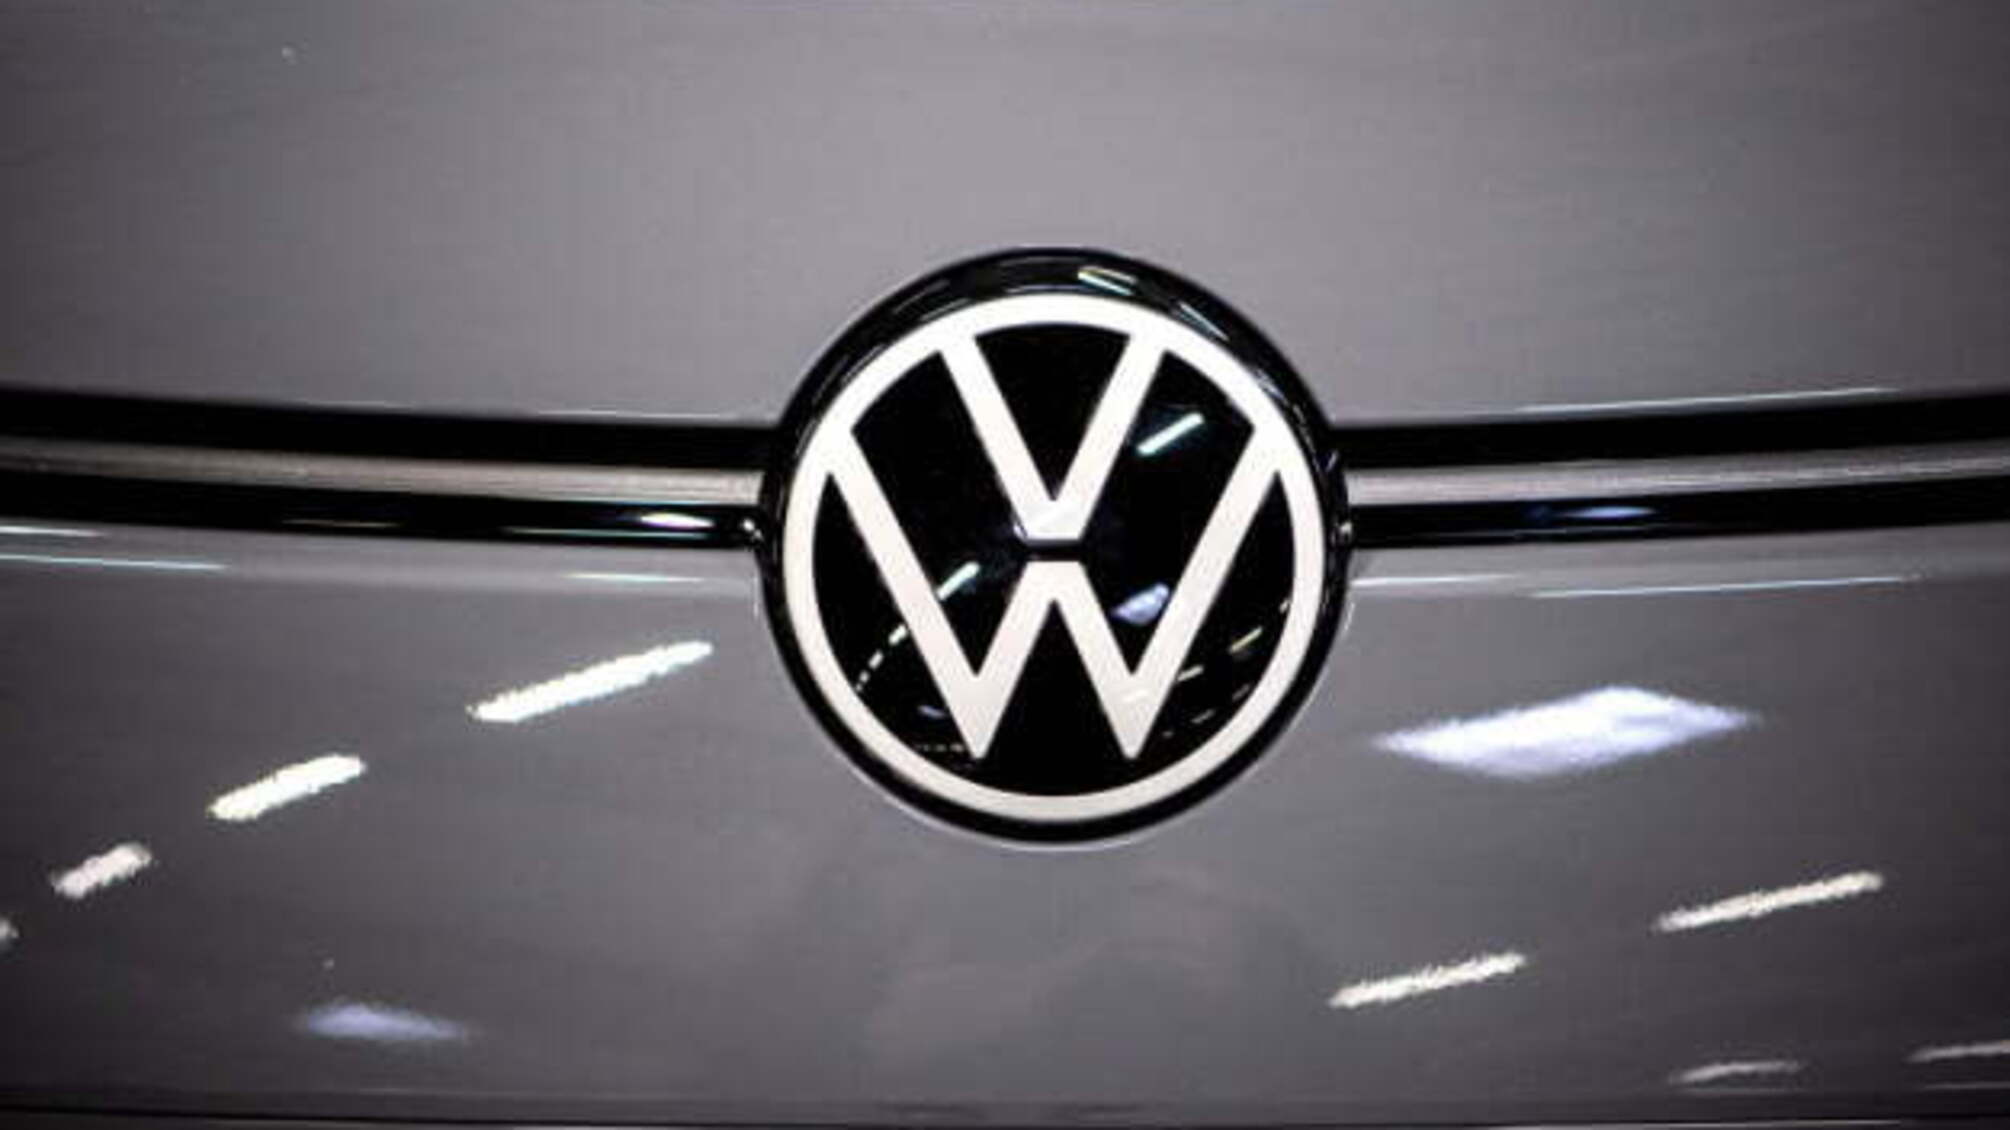 Volkswagen побудує в Європі мережу заводів з виробництва акумуляторних батарей